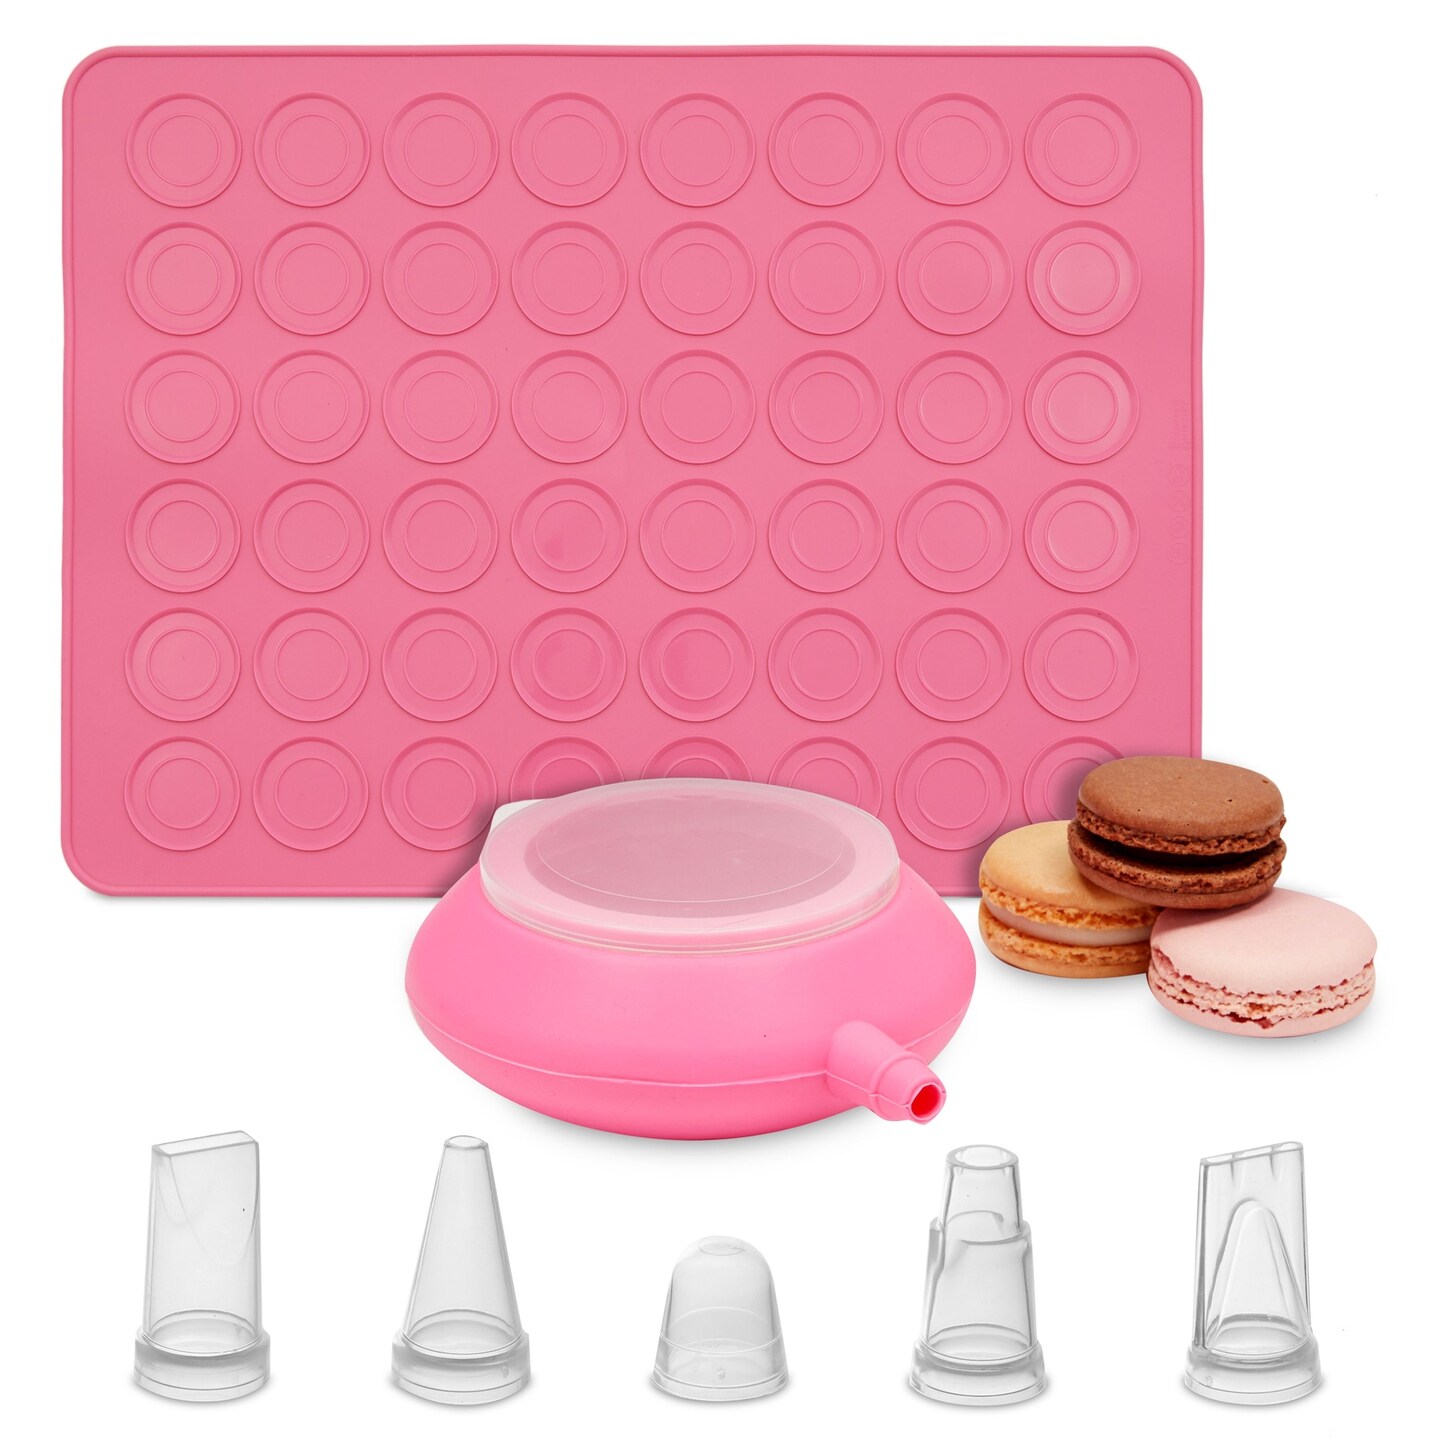 Macaron Baking Kit with Pink Silicone Mat Cookie Sheet, Piping Pot